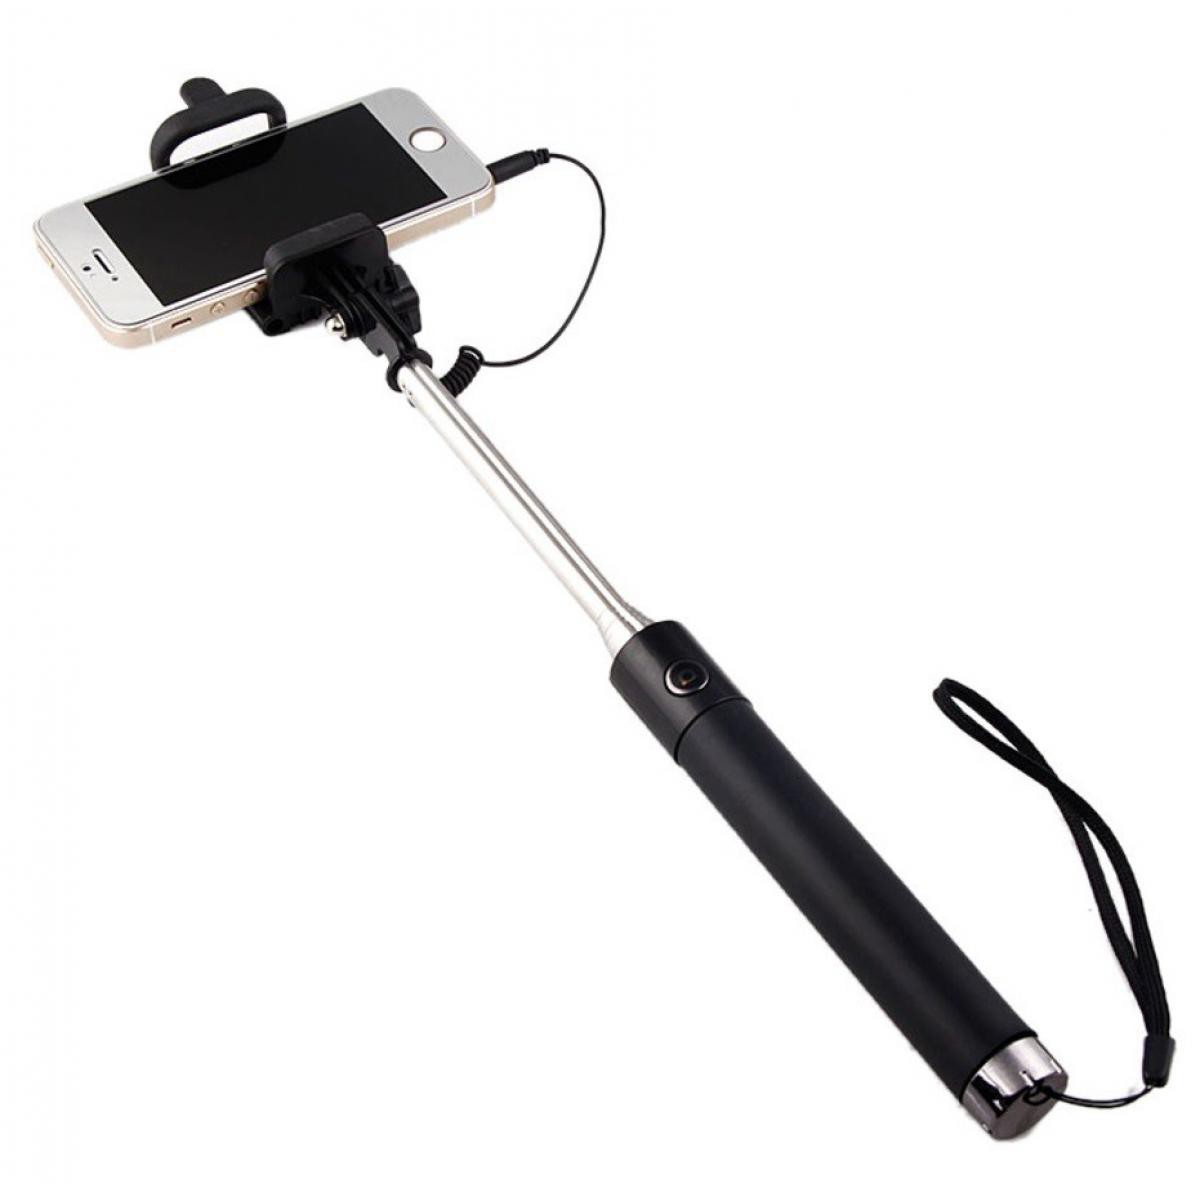 Shot - Selfie Stick Metal pour WIKO Y60 Smartphone Perche Android IOS Reglable Bouton Photo Cable Jack Noir - Autres accessoires smartphone